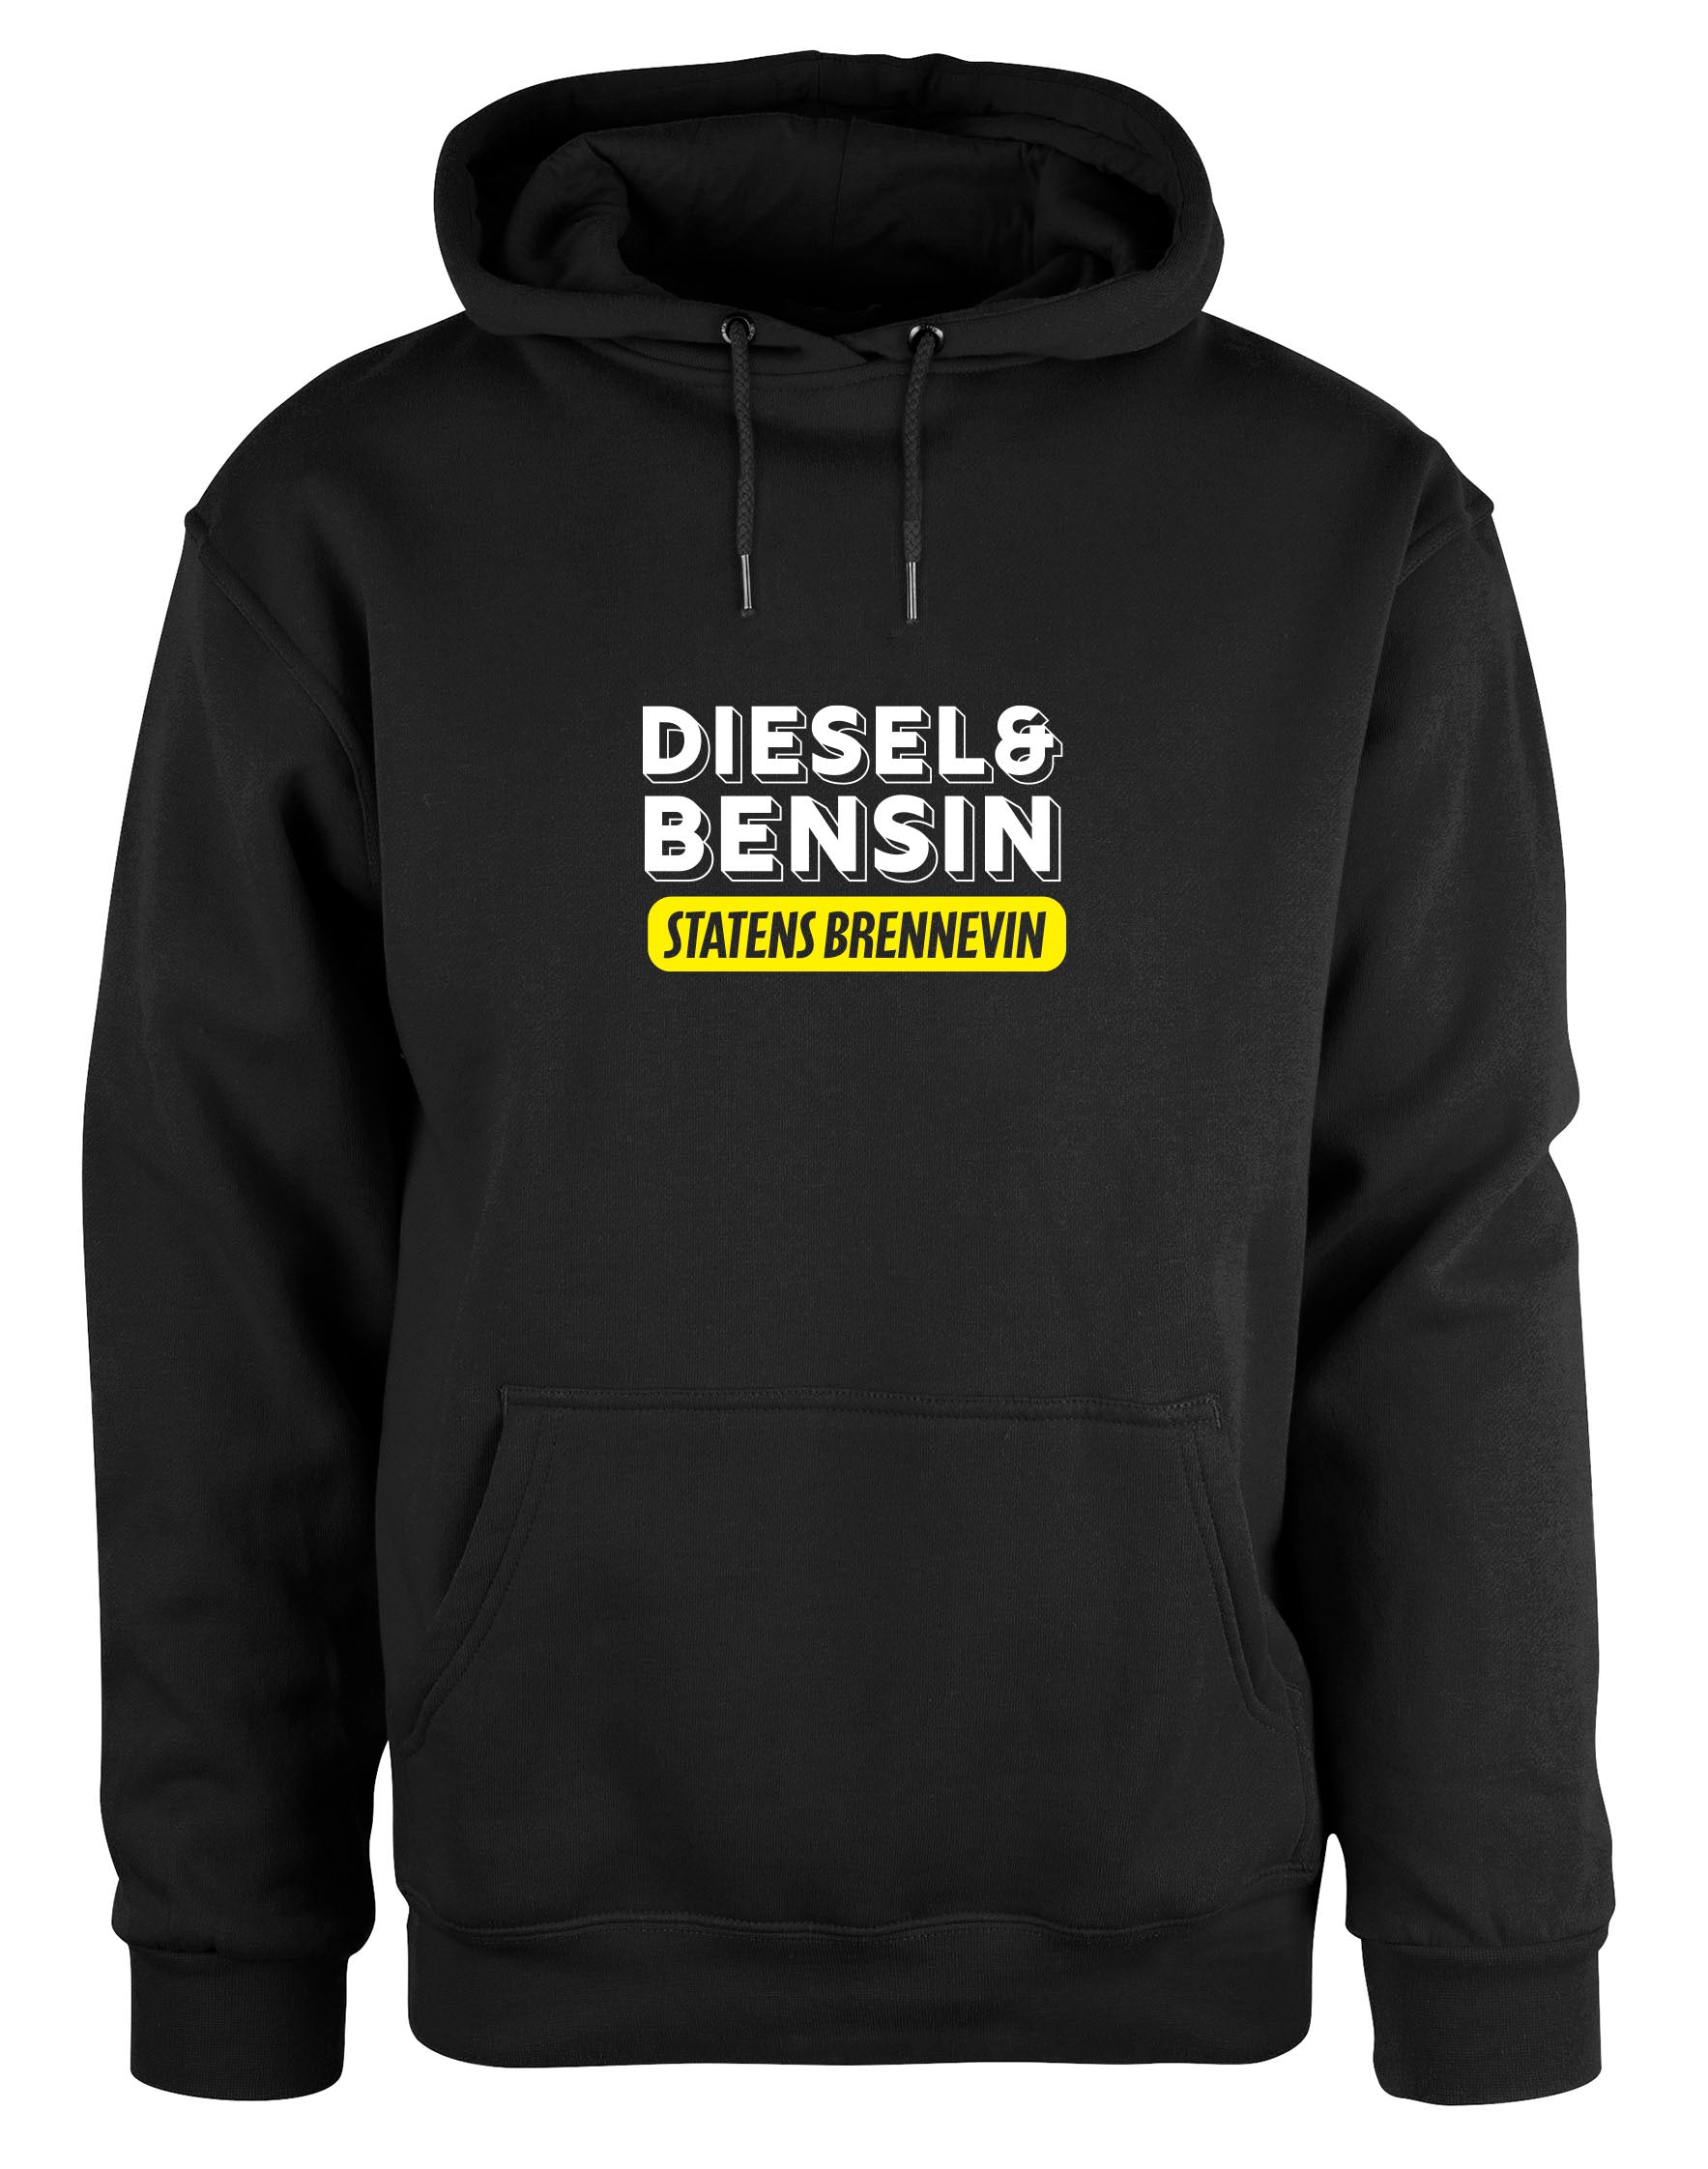 Diesel og bensin hoodie